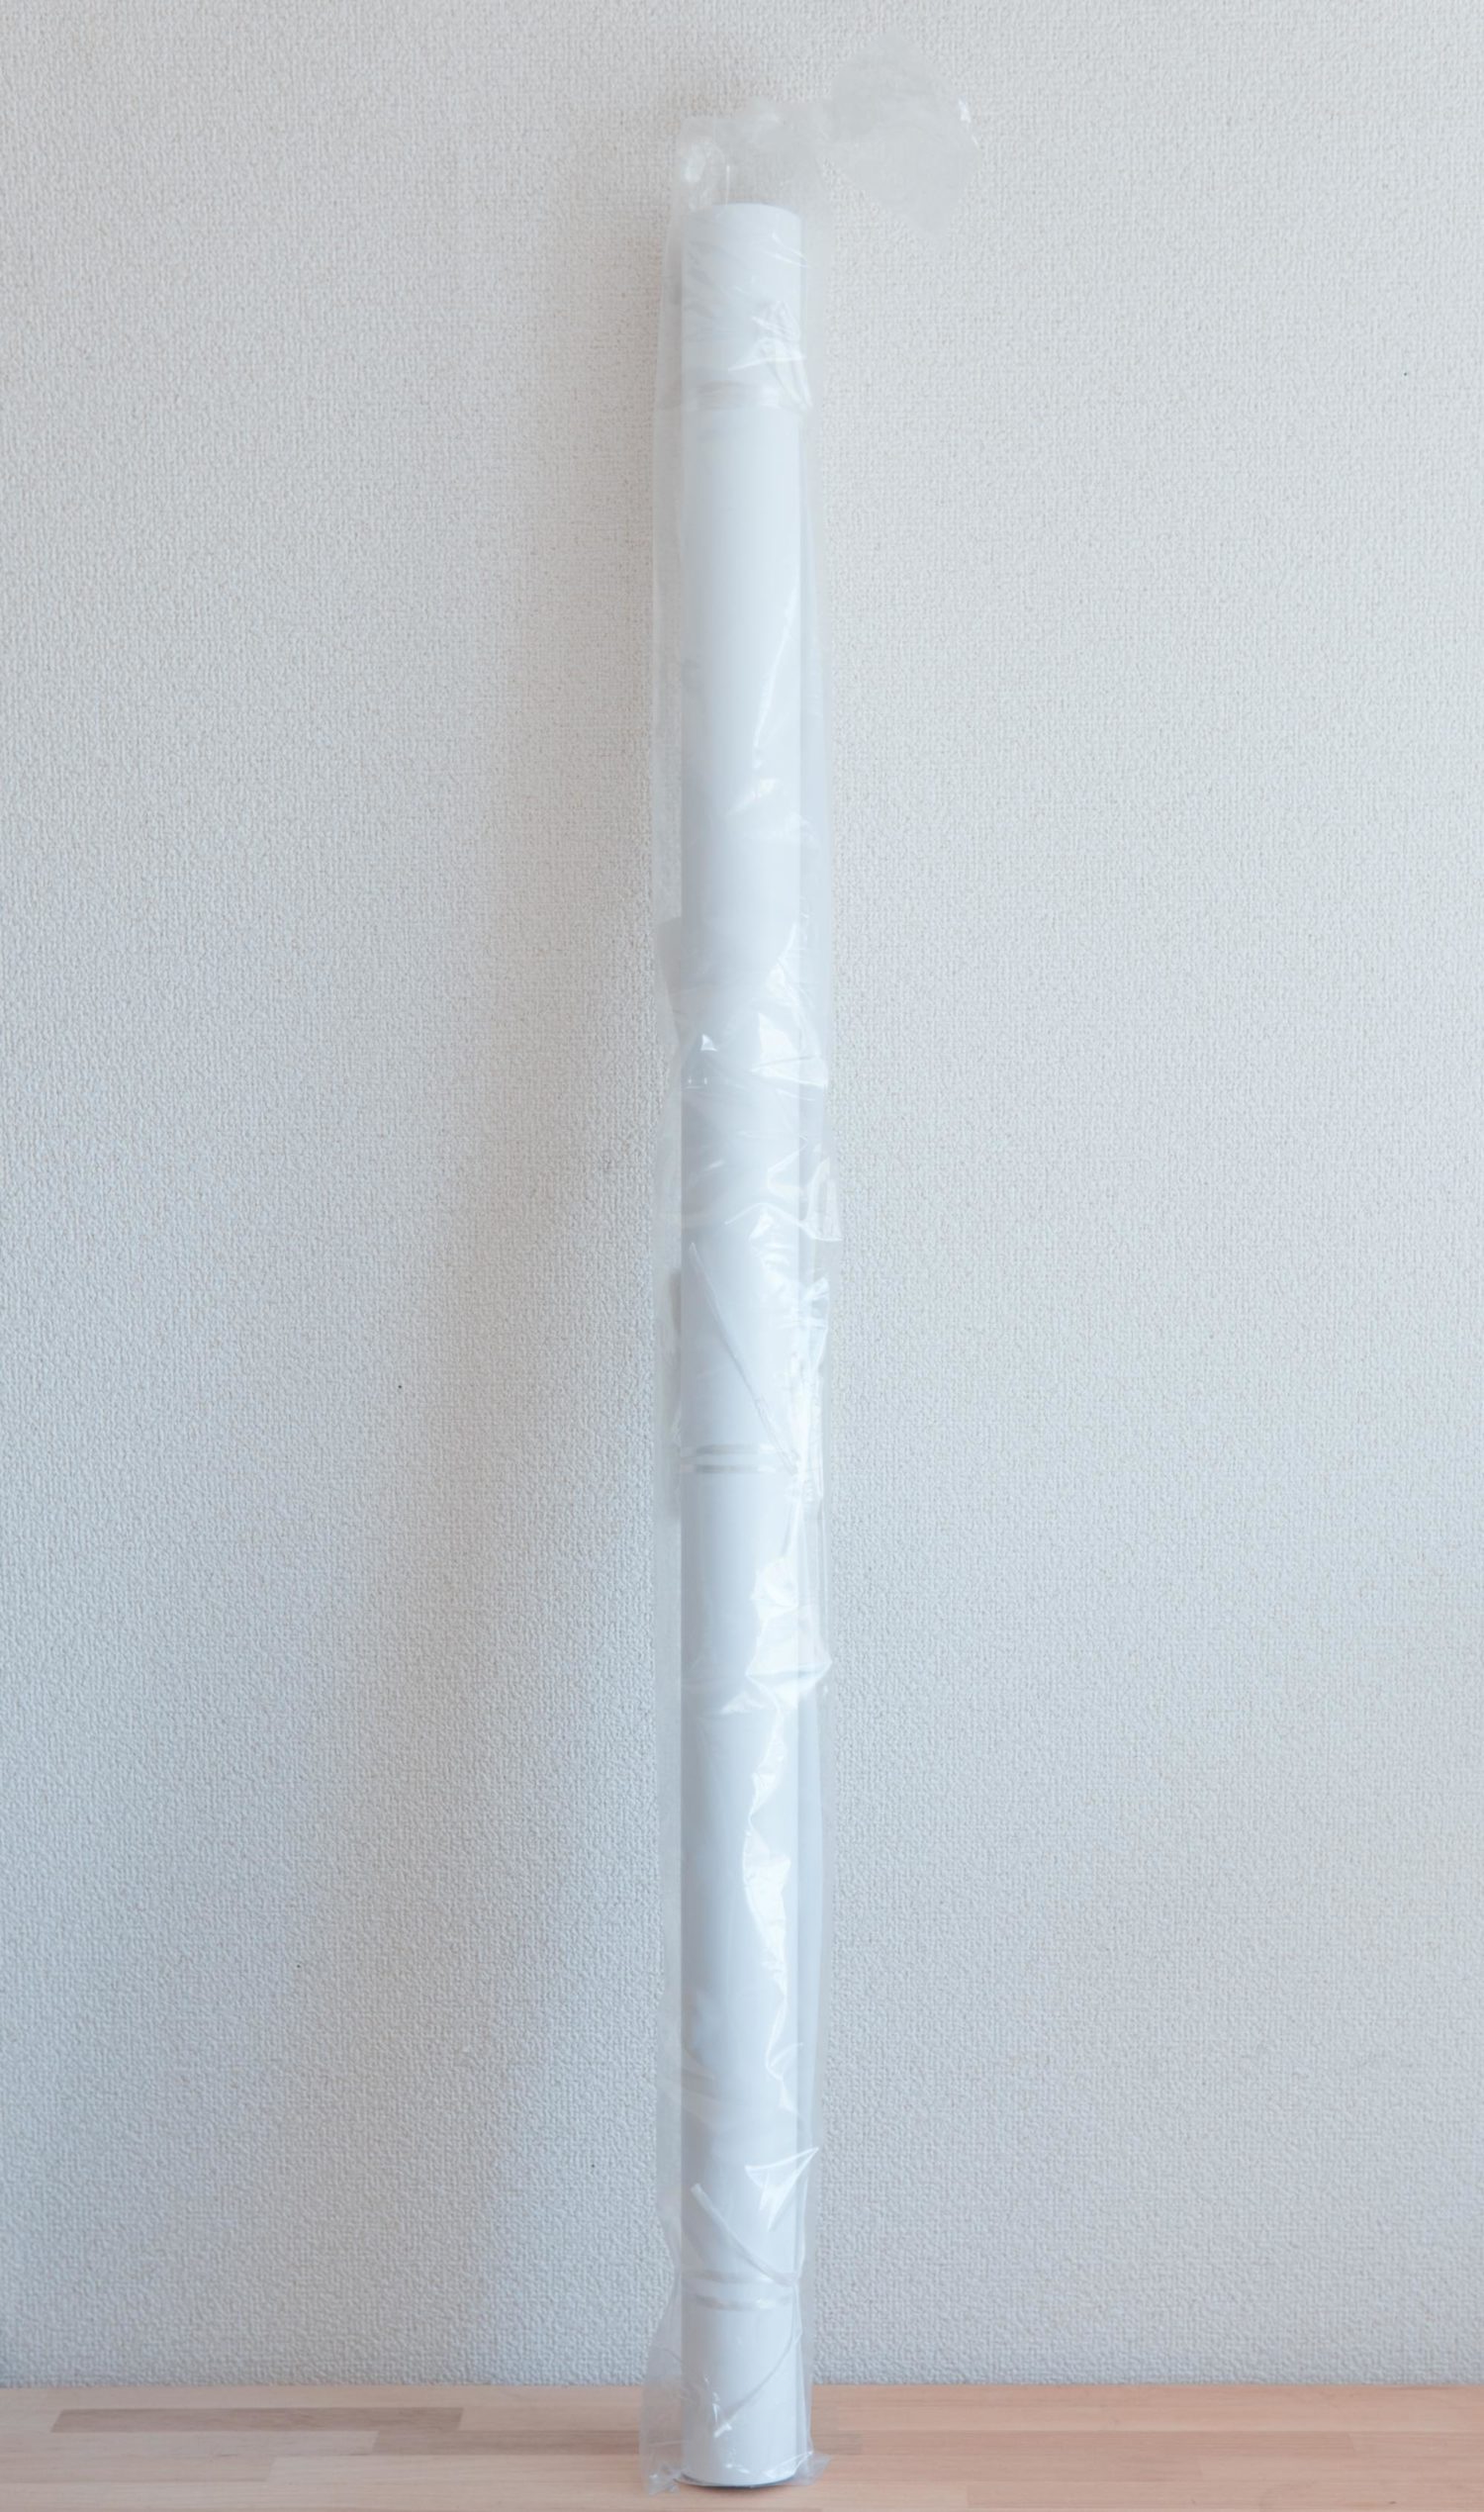 プラスチック製が便利 物撮りの際に使うオススメの白い背景紙を新調しました